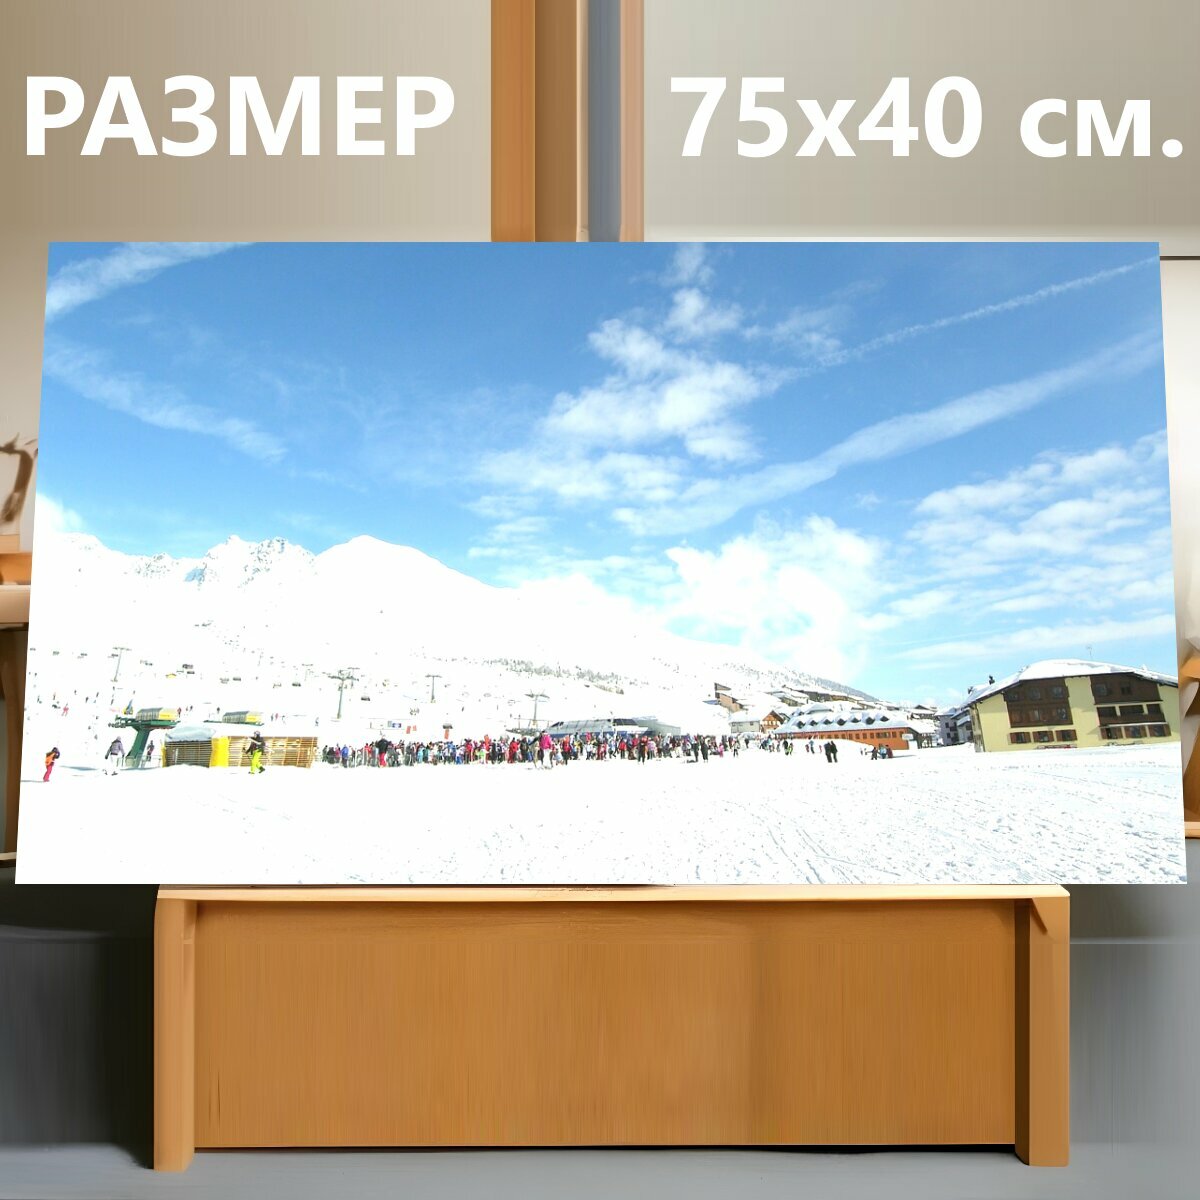 Картина на холсте "Горные лыжи, кататься на лыжах, лыжный район" на подрамнике 75х40 см. для интерьера